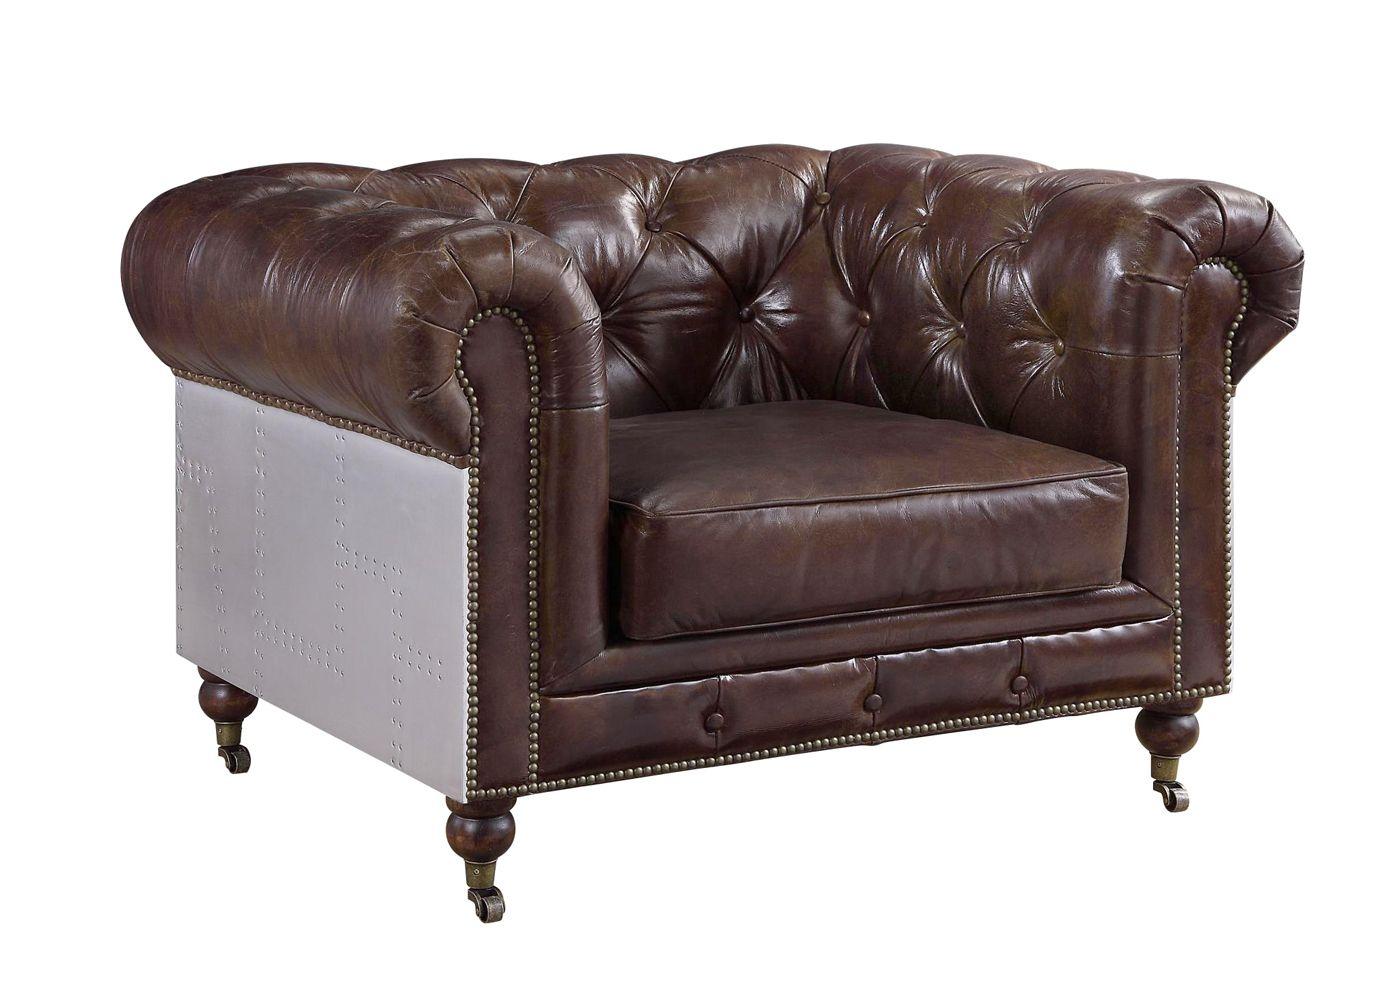 Transitional, Vintage, Urban Arm Chairs Aberdeen 56592 56592 Aberdeen in Metallic, Brown Genuine Leather